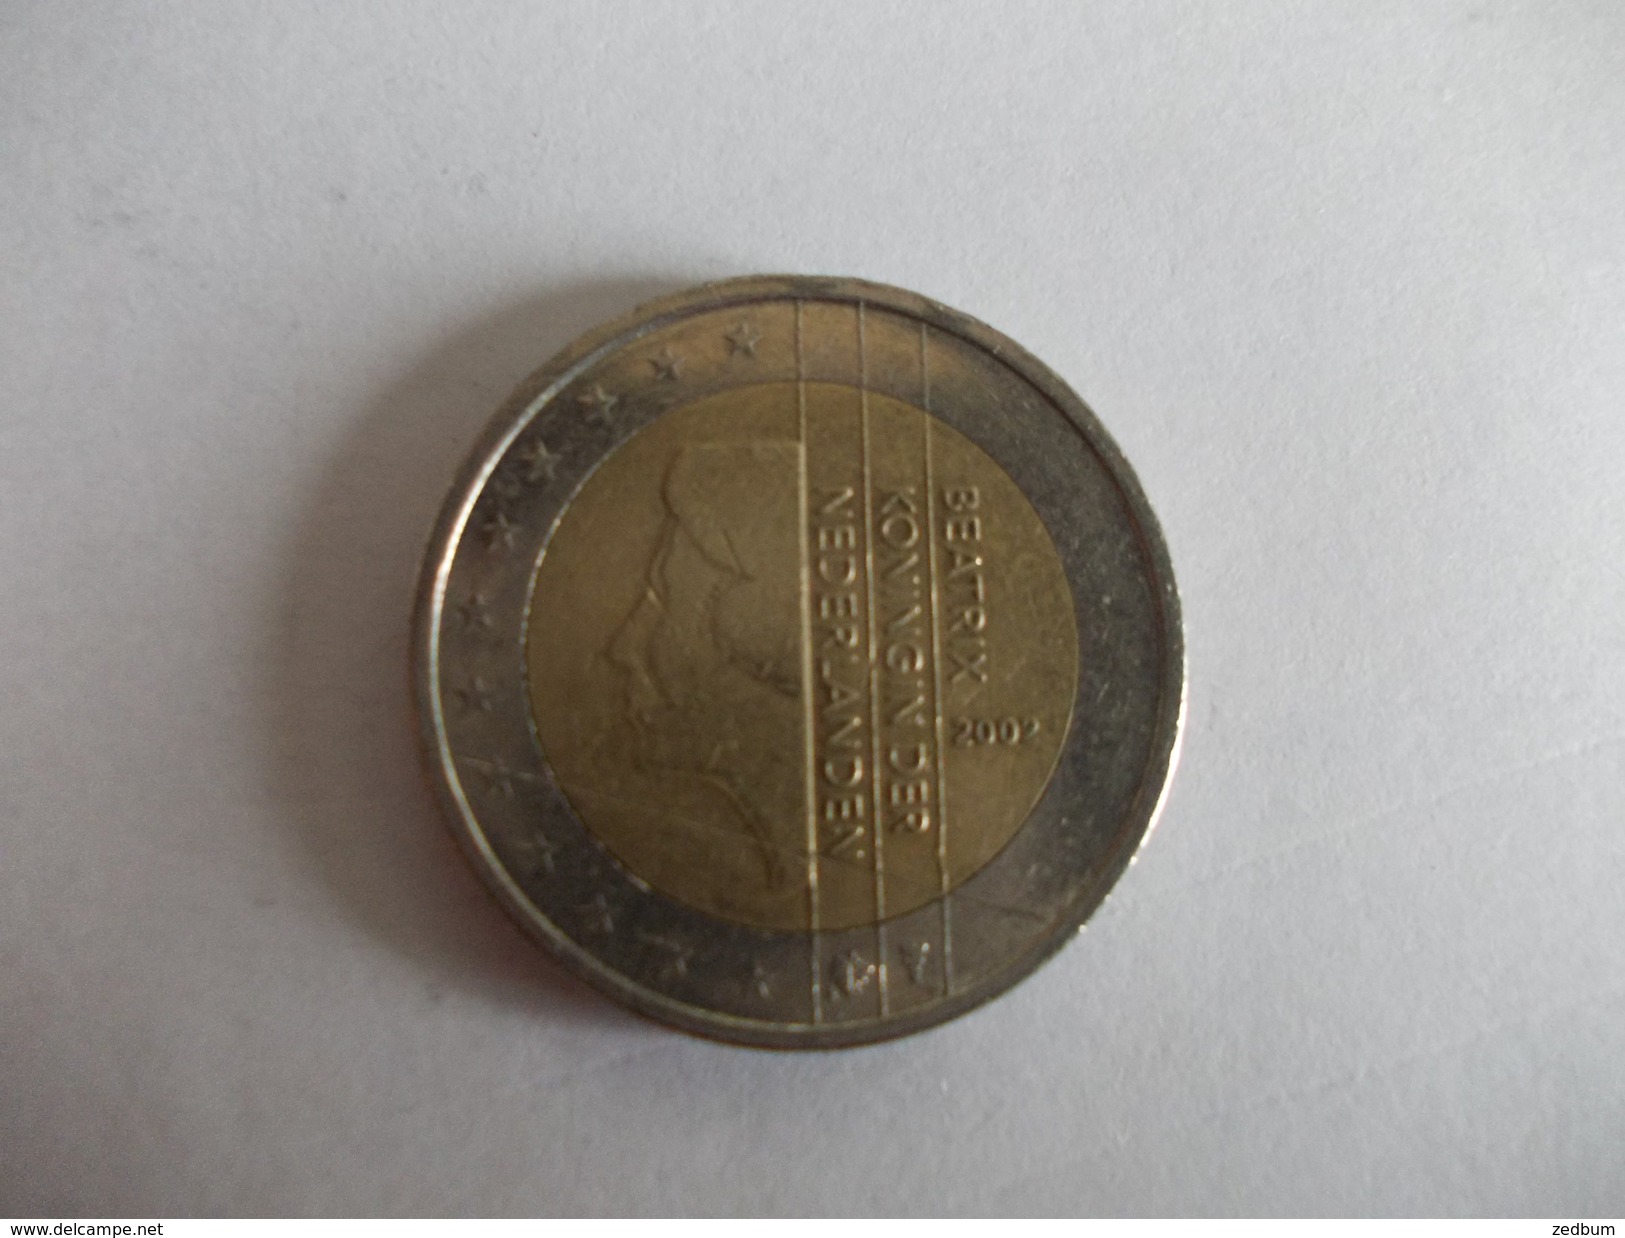 Monnaie Pièce De 2 Euros De Pays Bas Année 2002 Valeur Argus 3 &euro; - Netherlands